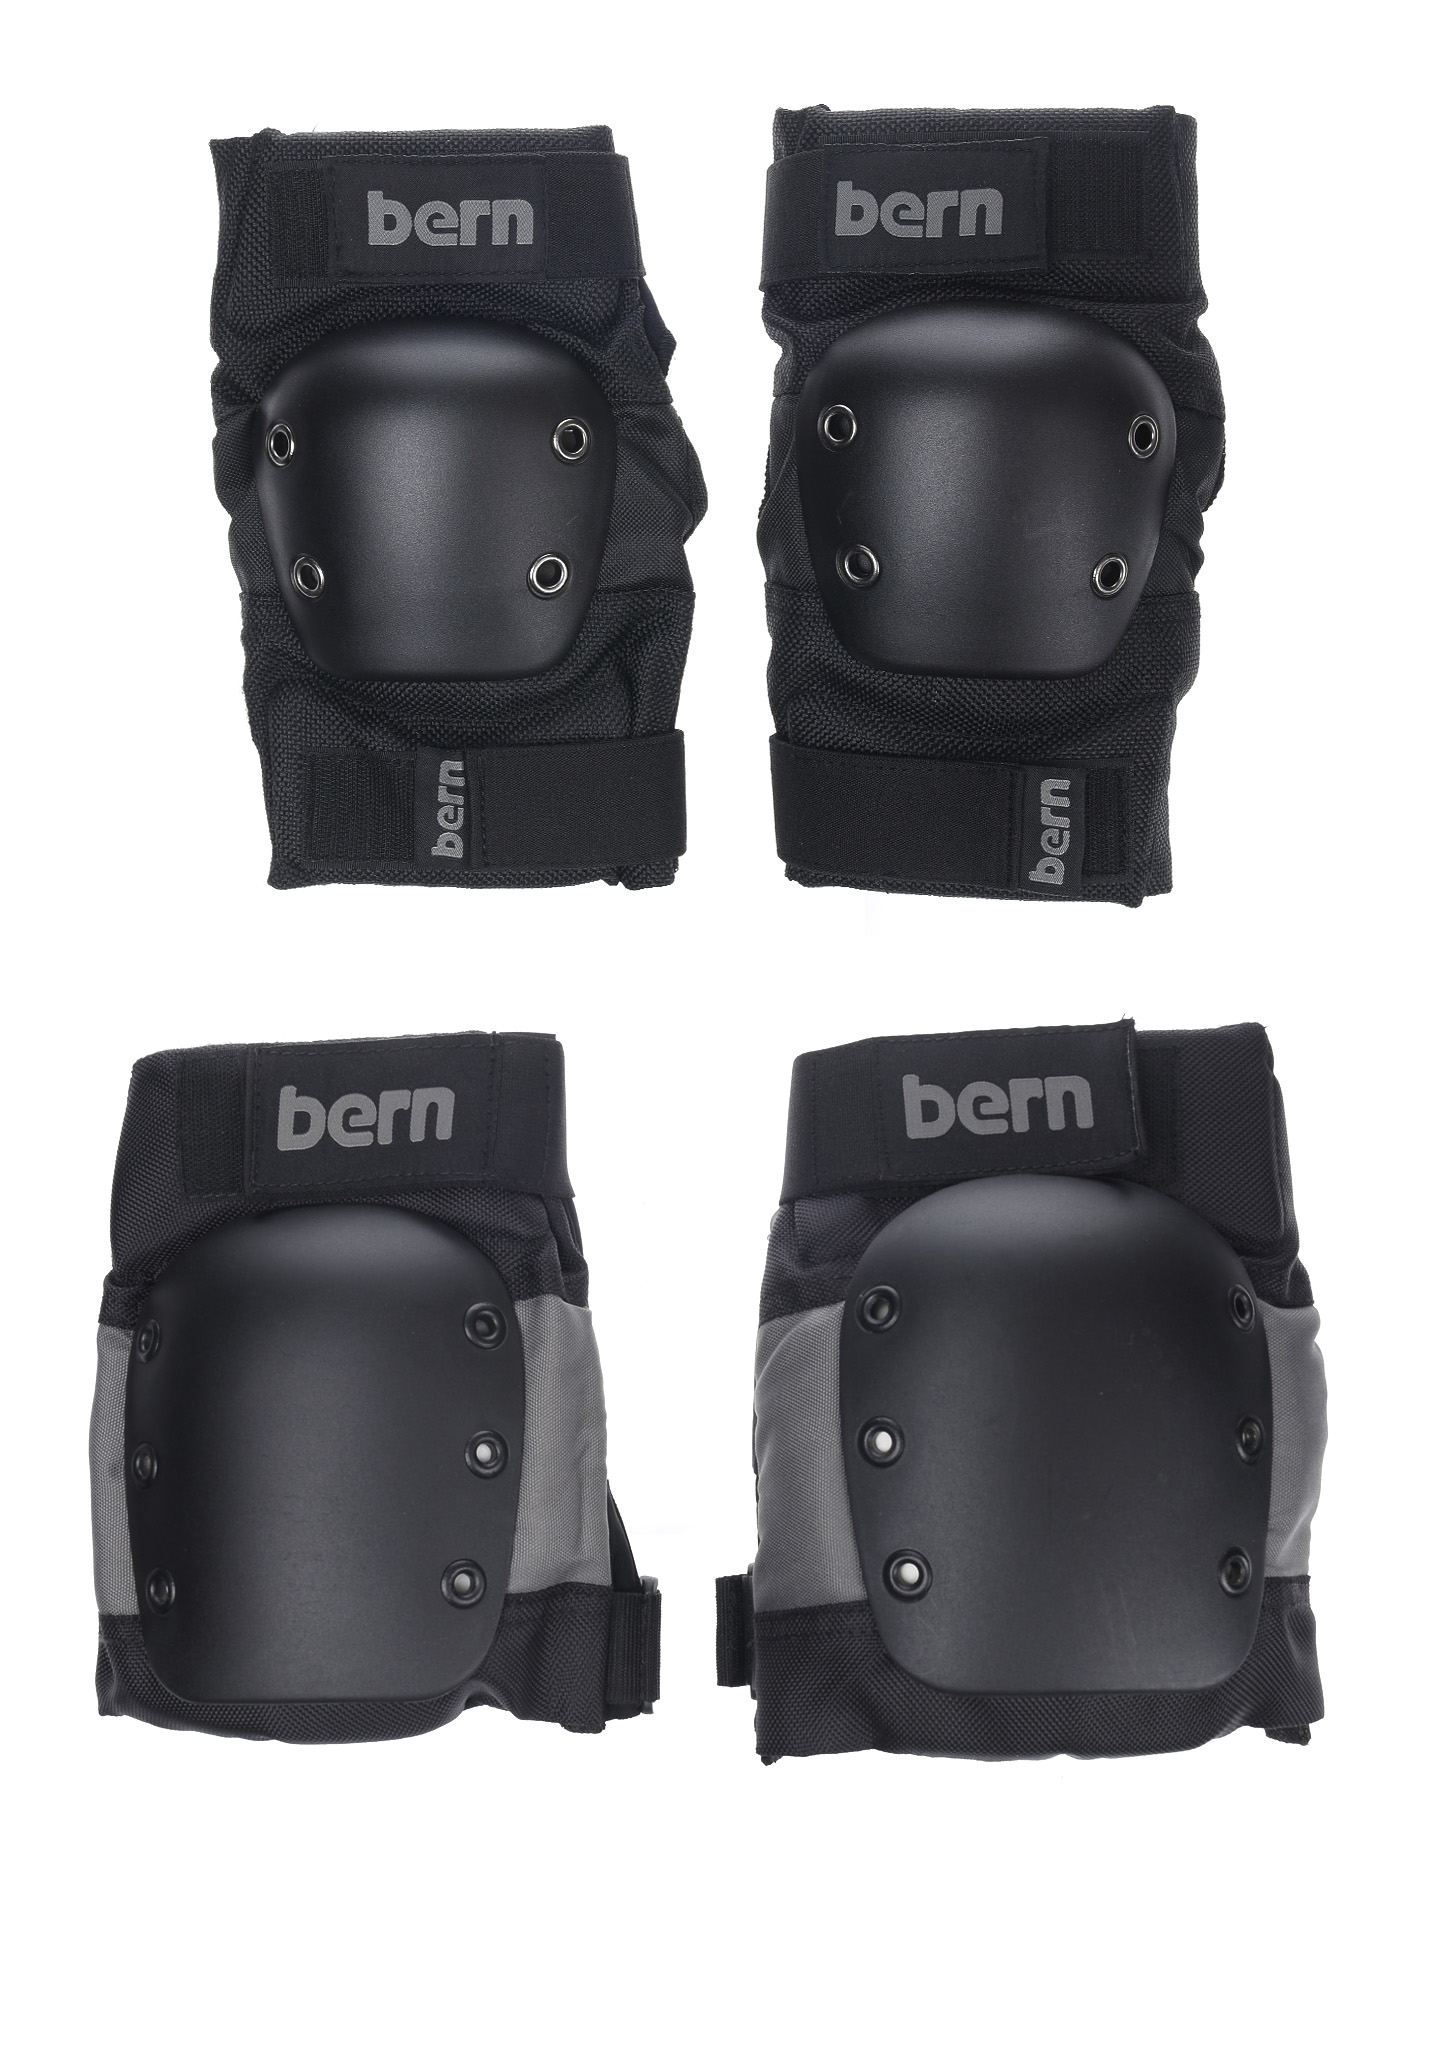 Bern Pad Set Skate Protektoren grau/schwarz L/XL